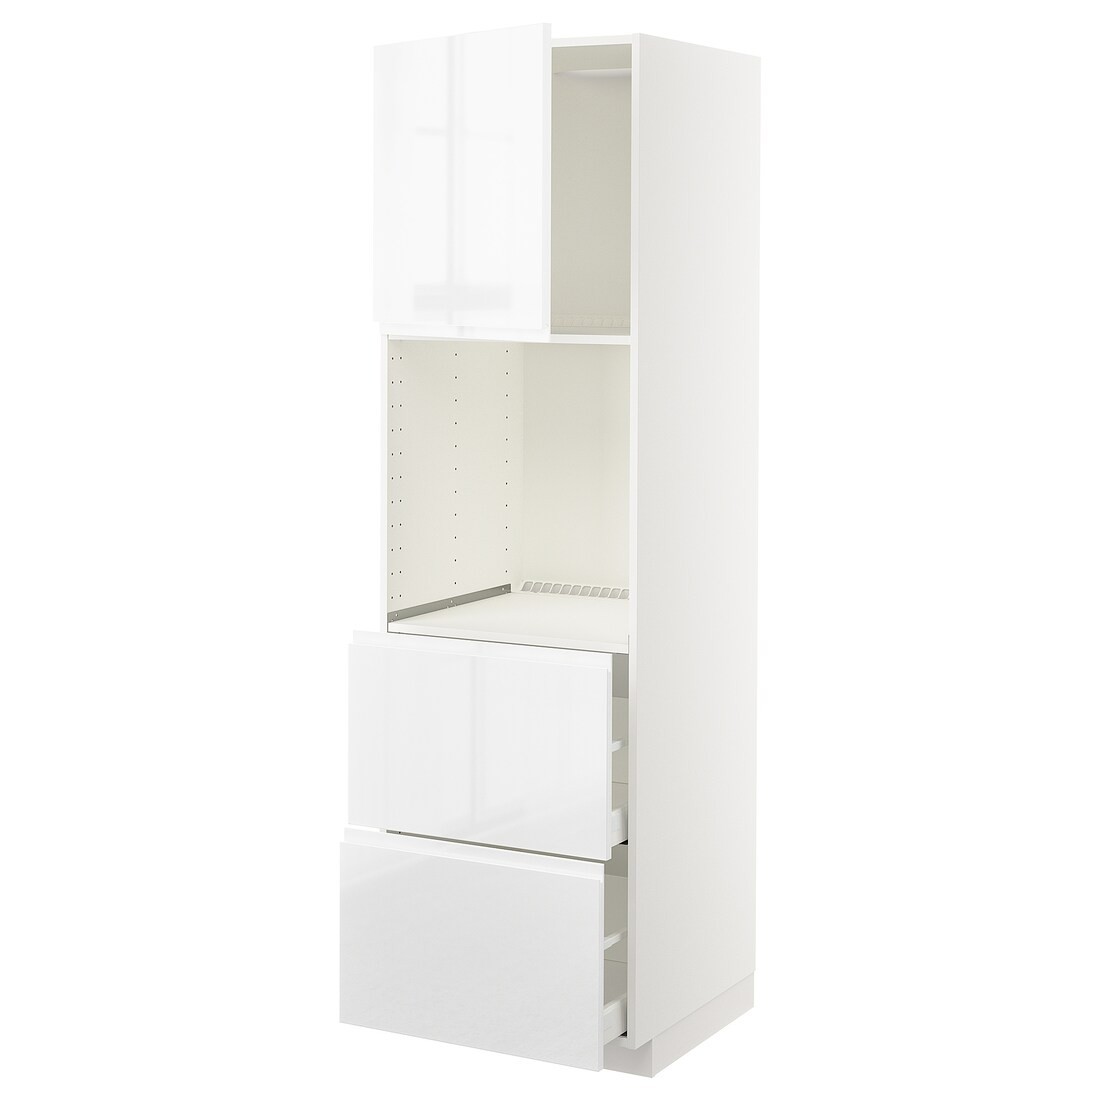 IKEA METOD МЕТОД / MAXIMERA МАКСИМЕРА Высокий шкаф для духовки с дверцей / ящиками, белый / Voxtorp глянцевый / белый, 60x60x200 см 39459691 394.596.91